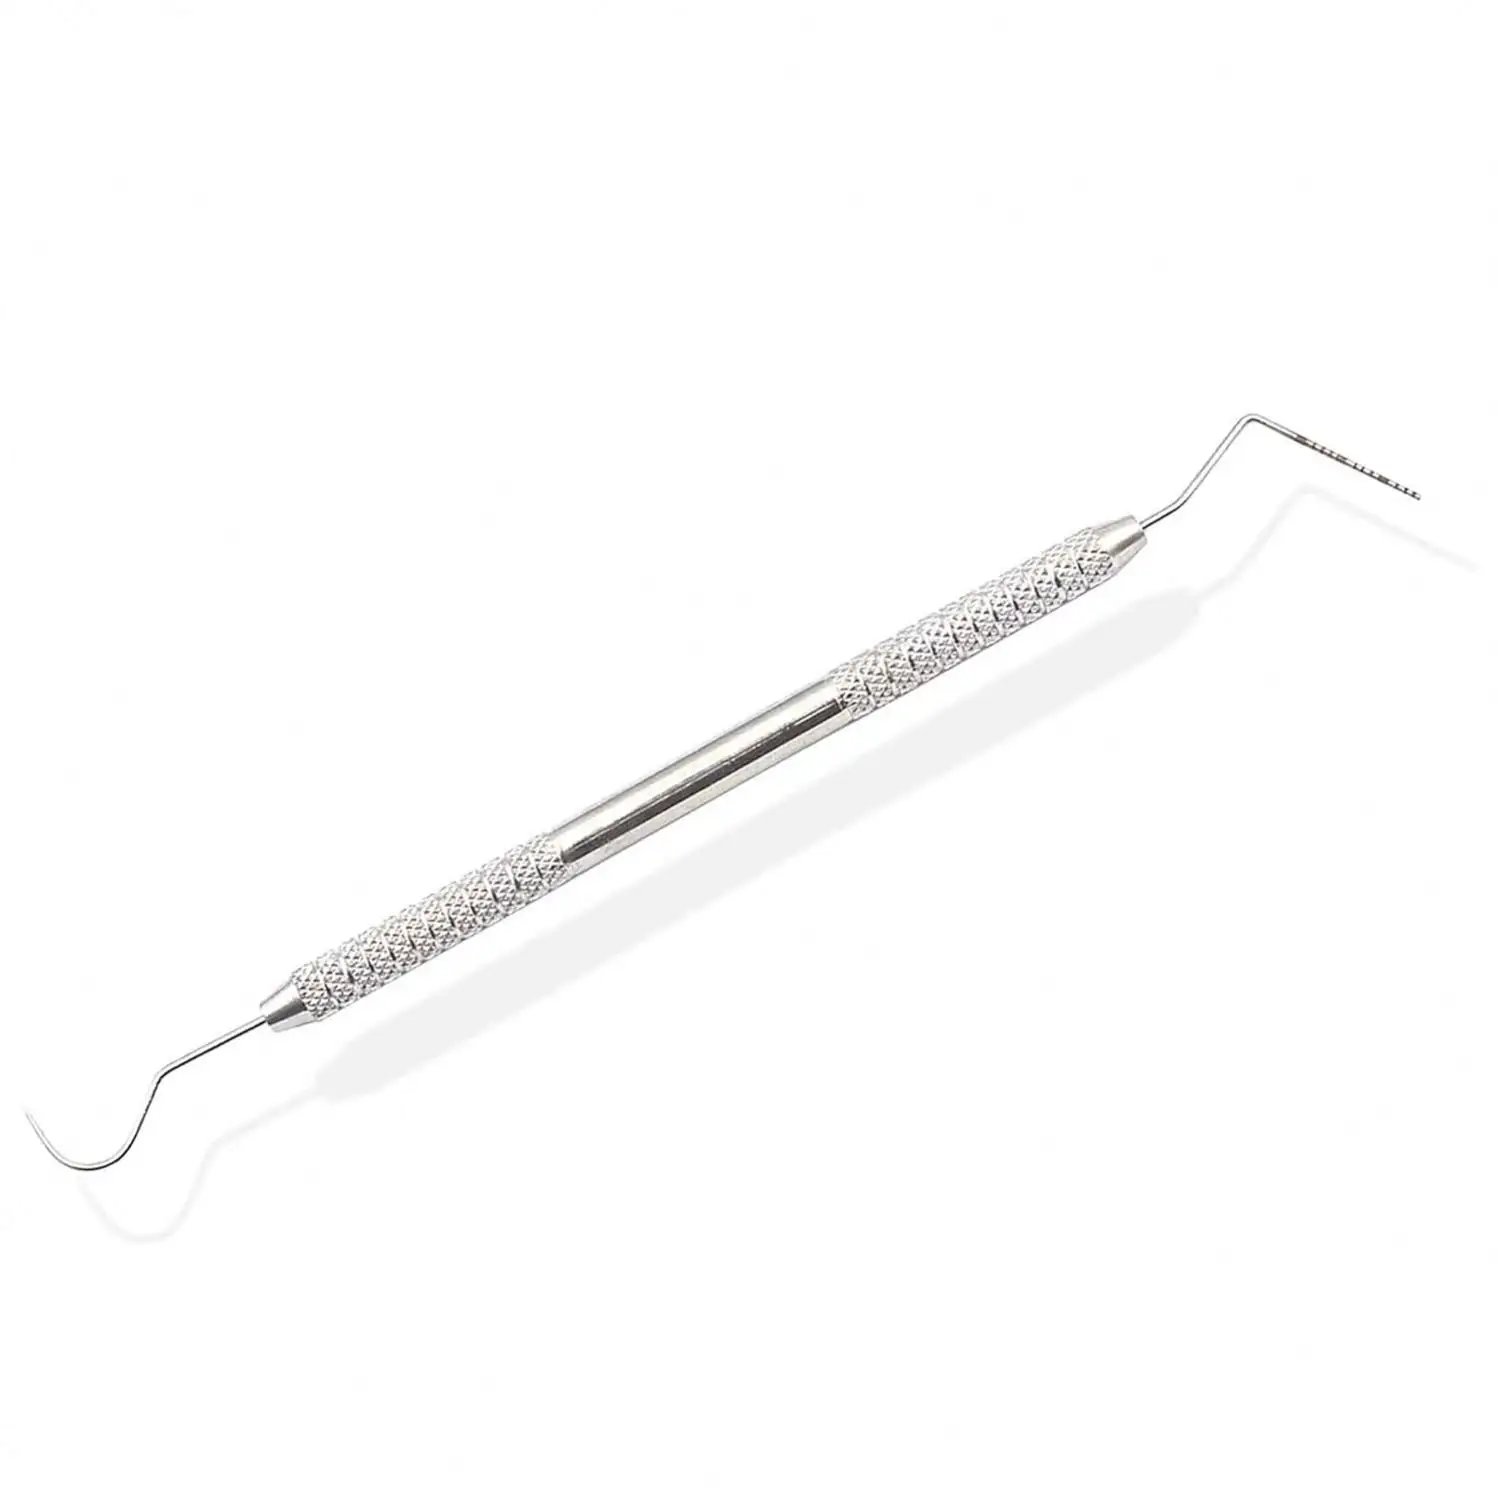 Strumento dentale dentista Kit strumenti per la pulizia dei denti bocca specchio sonda gancio pinzetta Set odontoiatria preparazione strumento